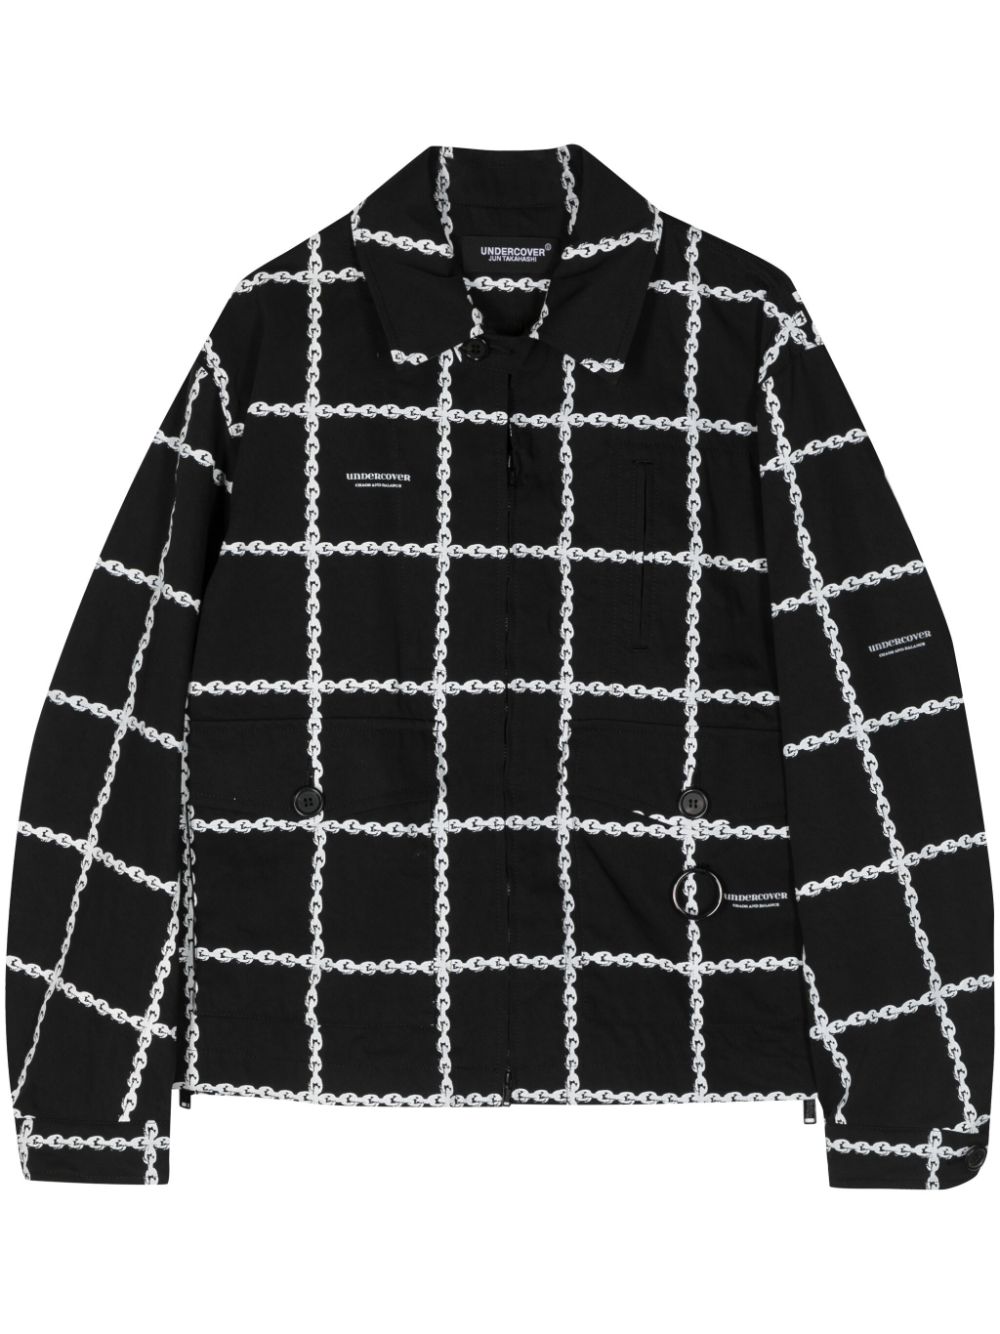 Undercover chain-print shirt jacket Zwart